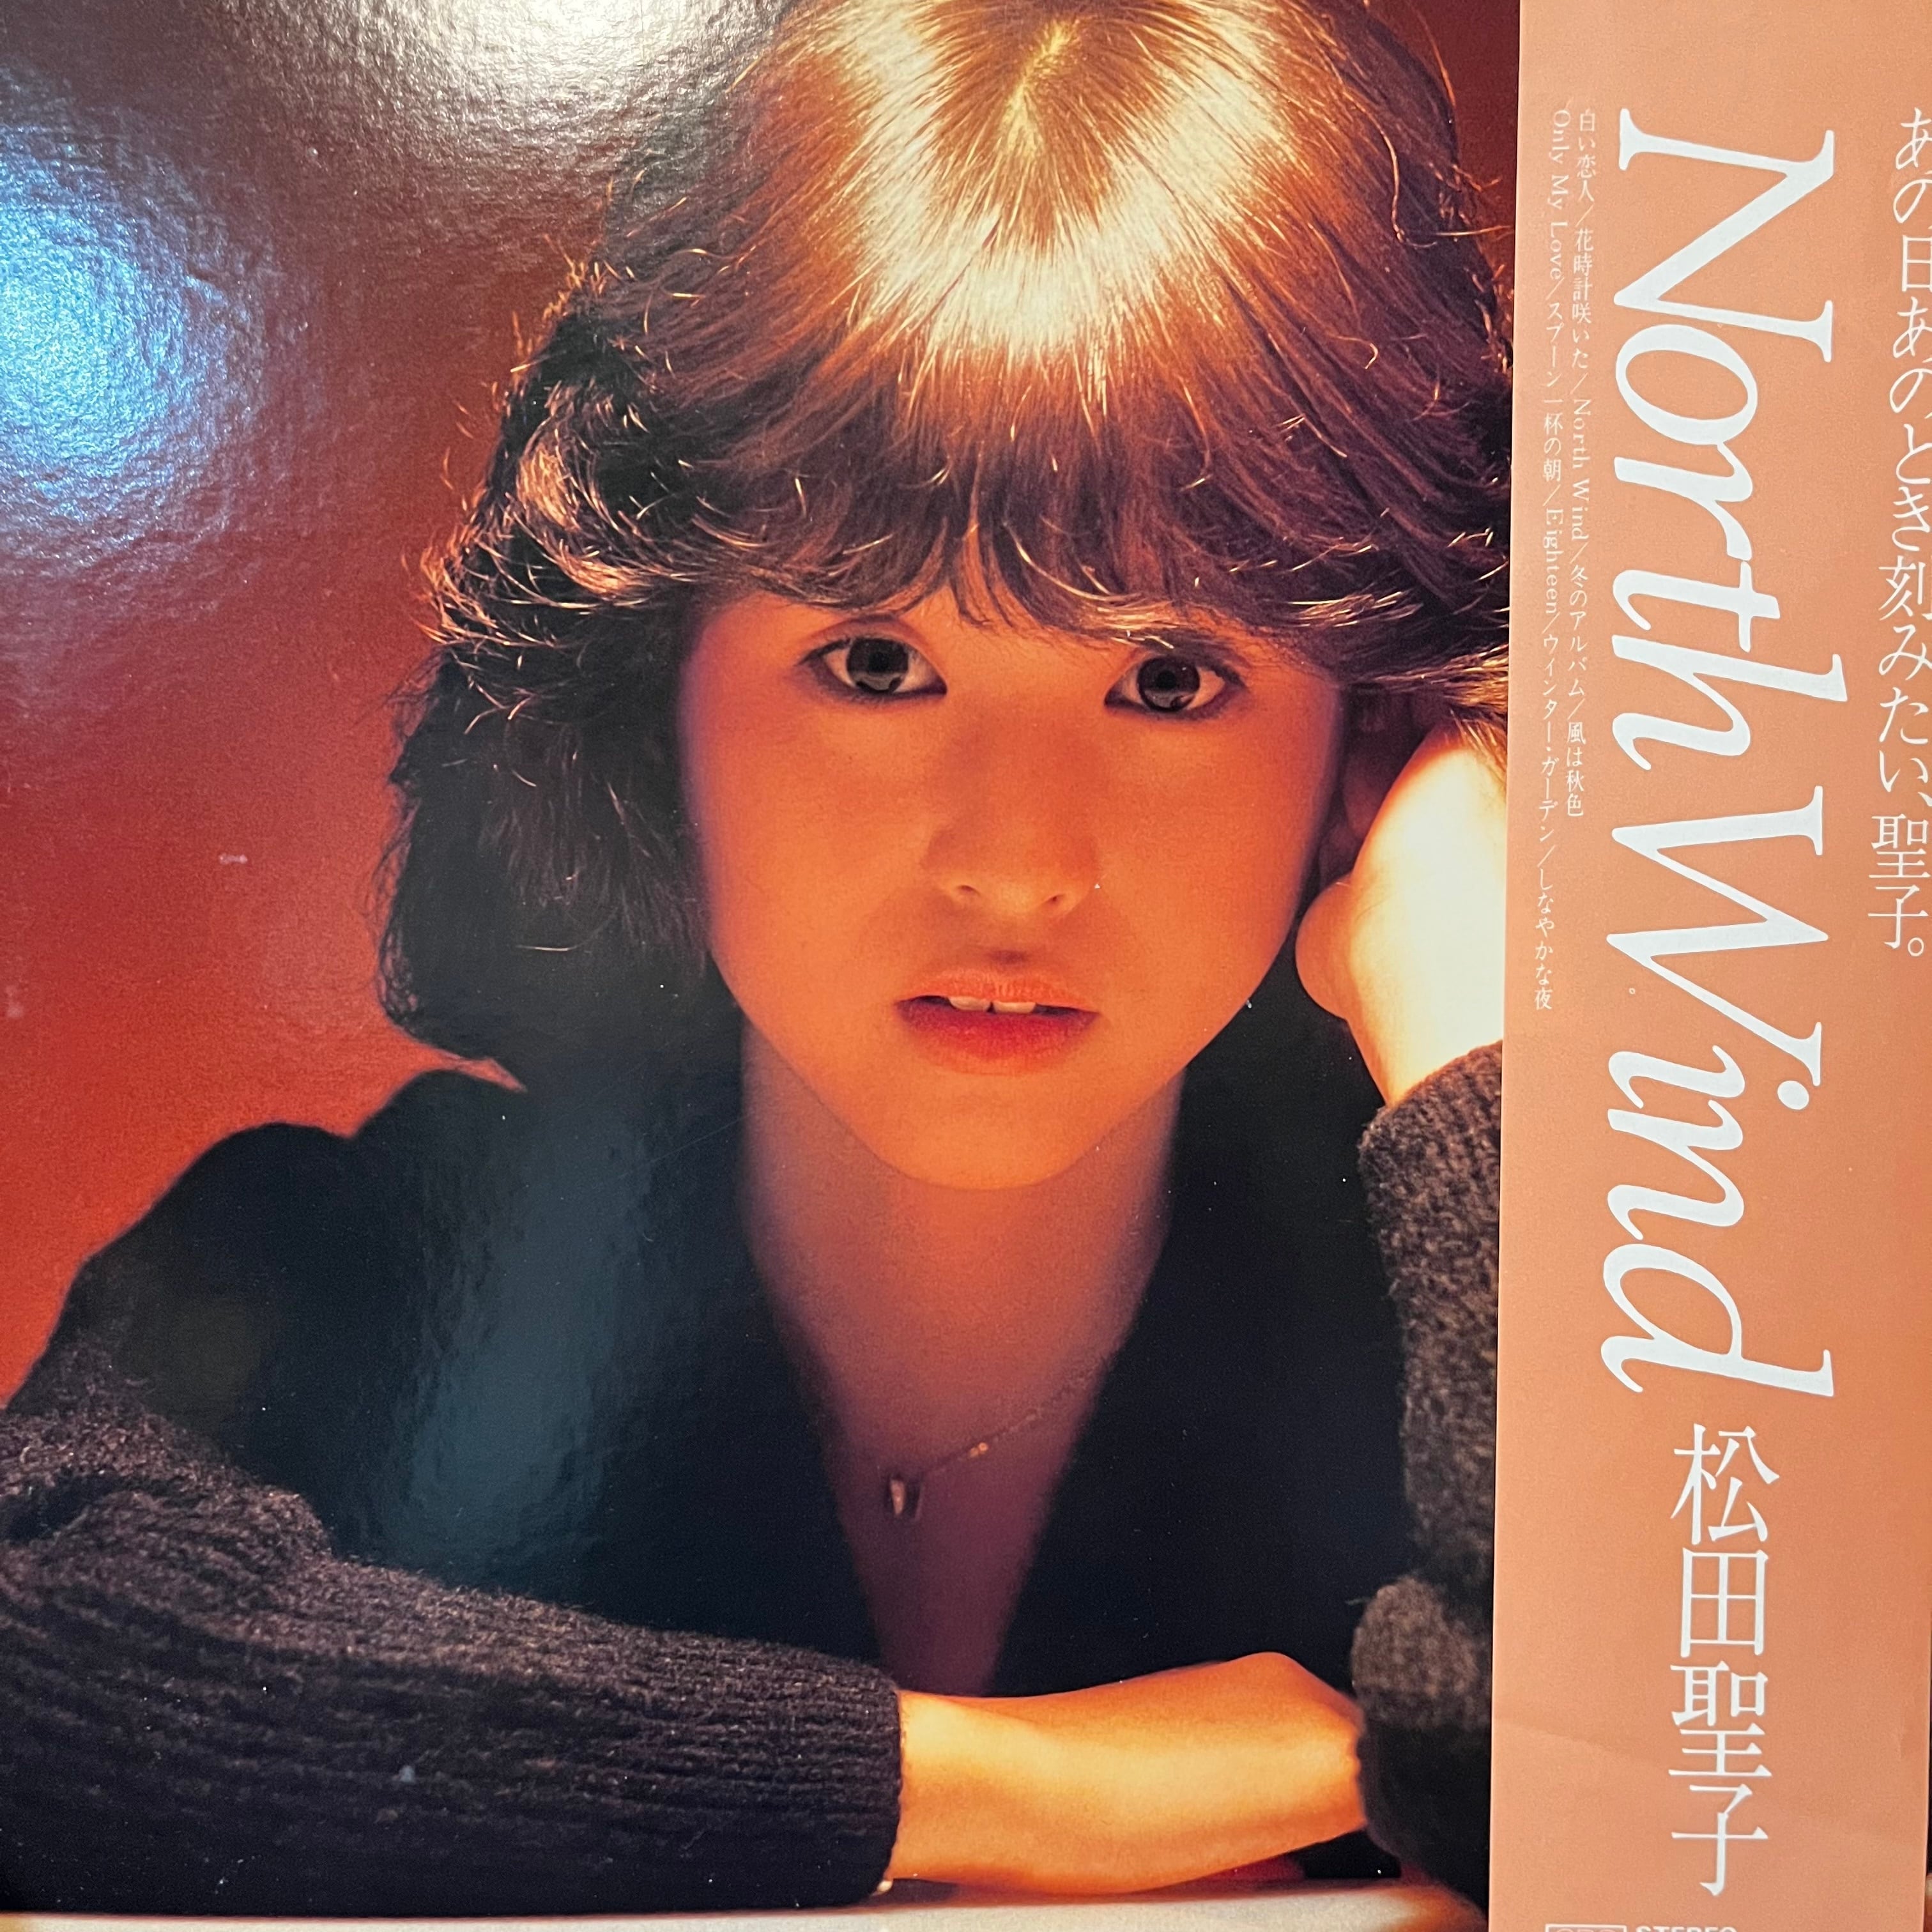 松田聖子– North Wind | レコードライク 中古レコード専門店